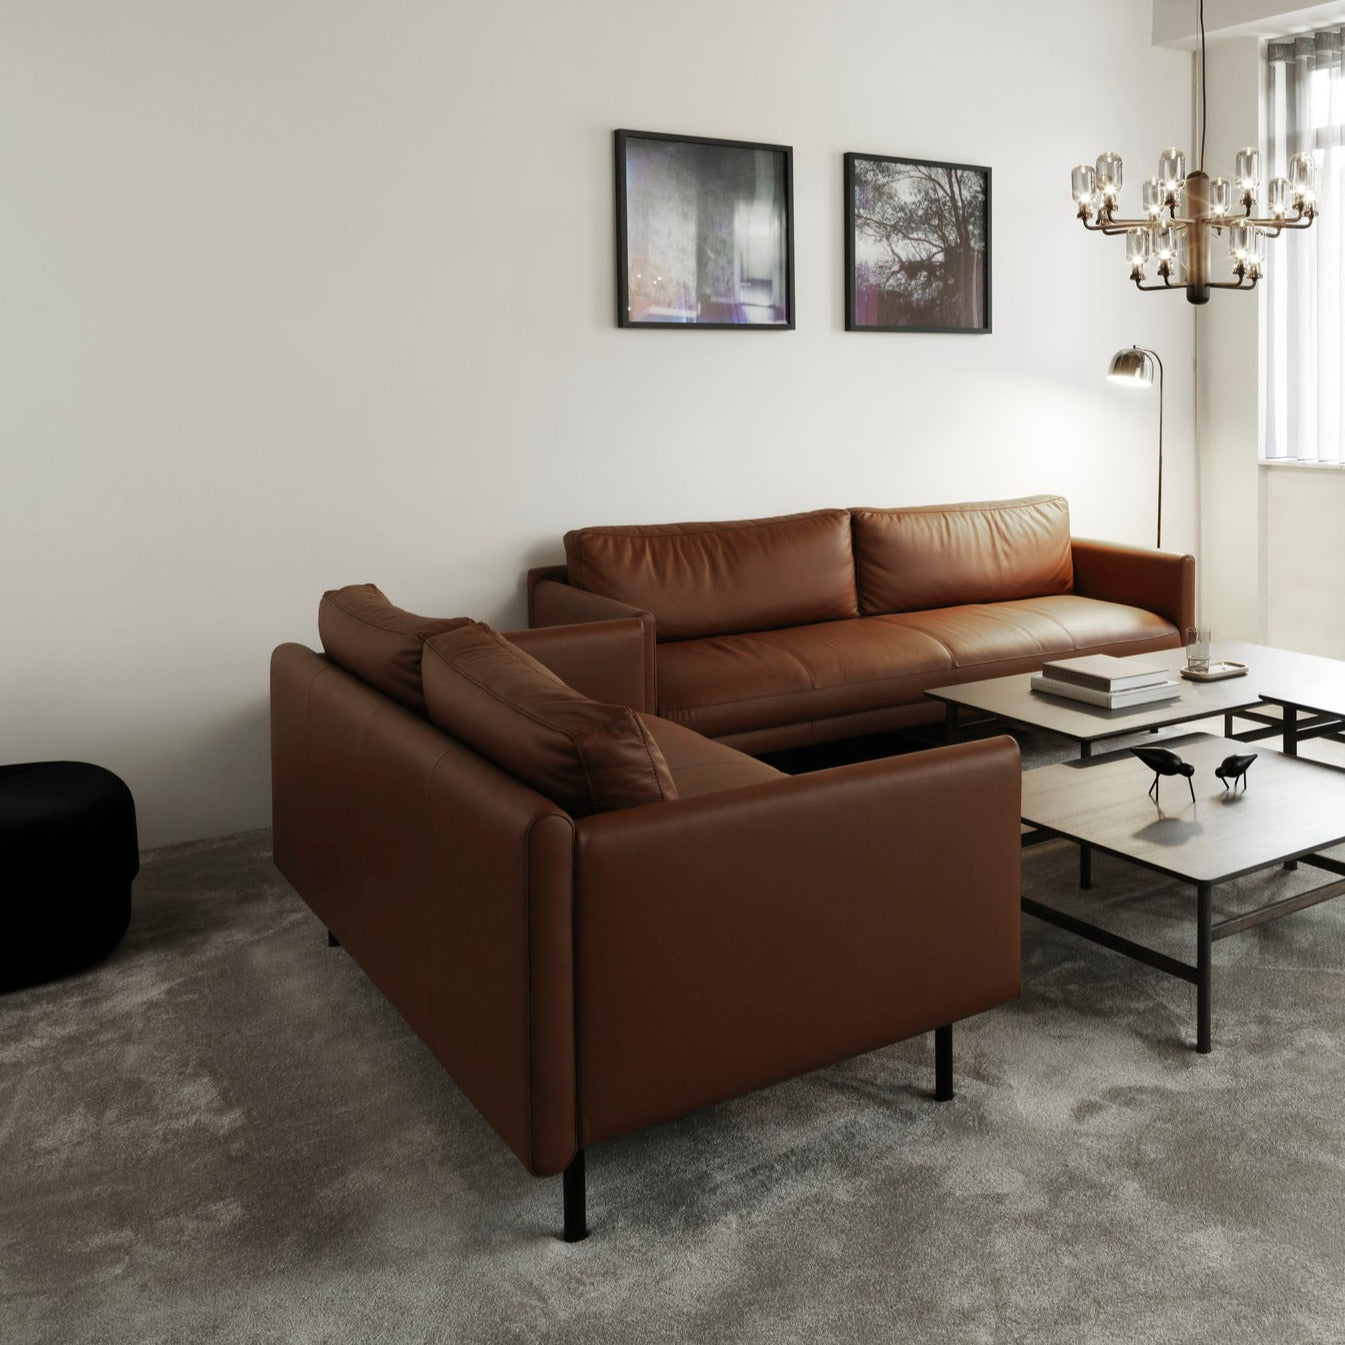 Normann Copenhagen Rar 2 Seater Sofa at someday designs. #colour_omaha-leather-cognac